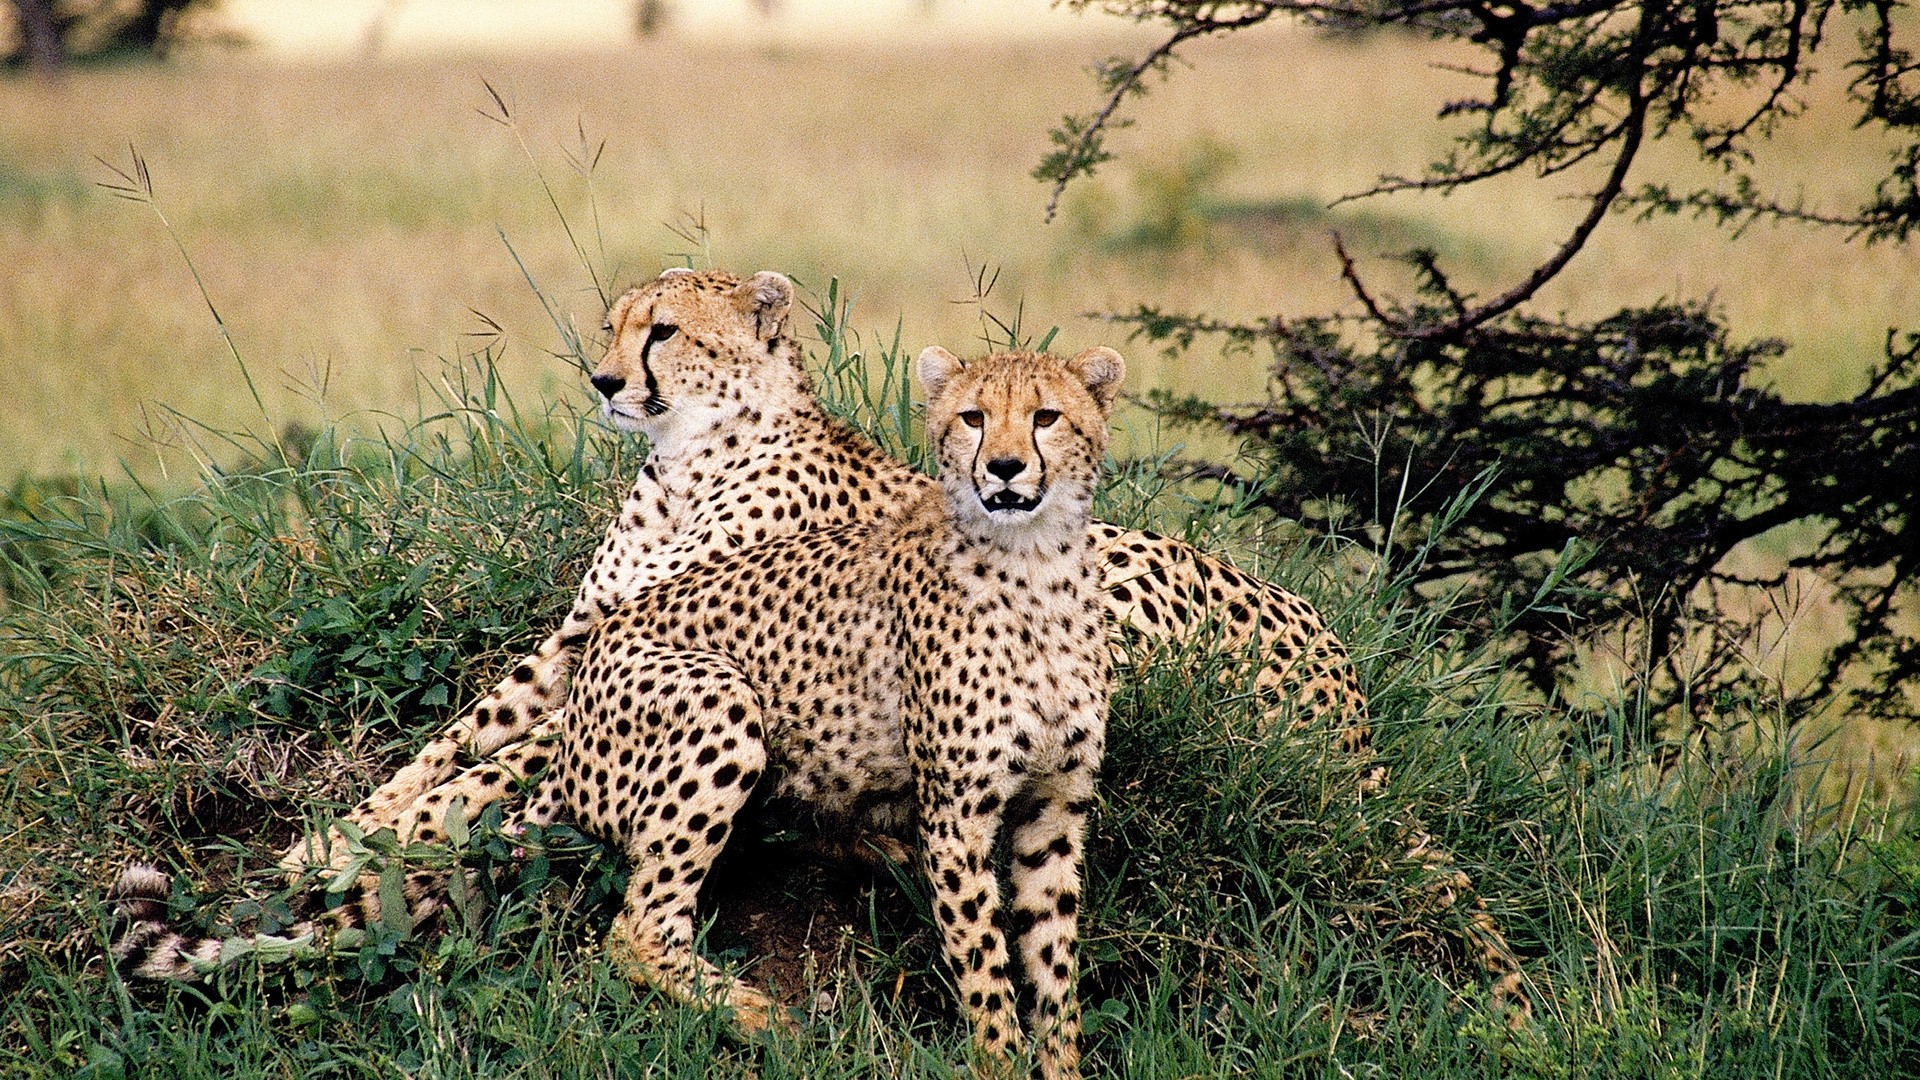 Cheetah hd wallpaper download